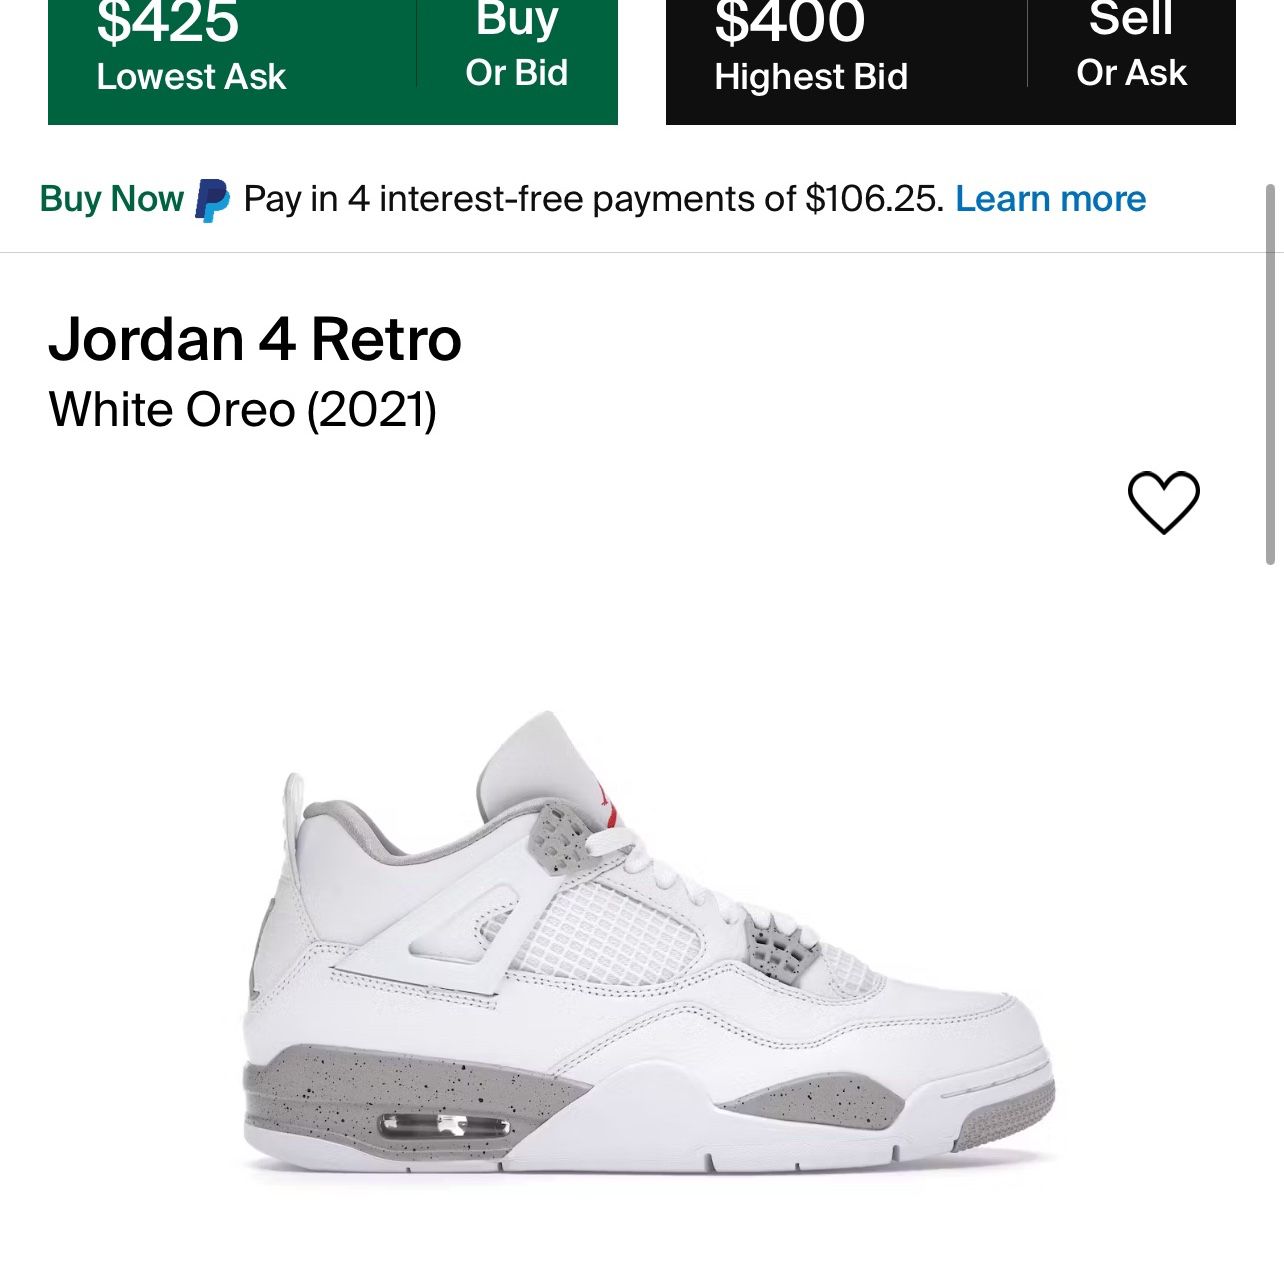 Jordan 4 Retro “White Oreo (2021)”